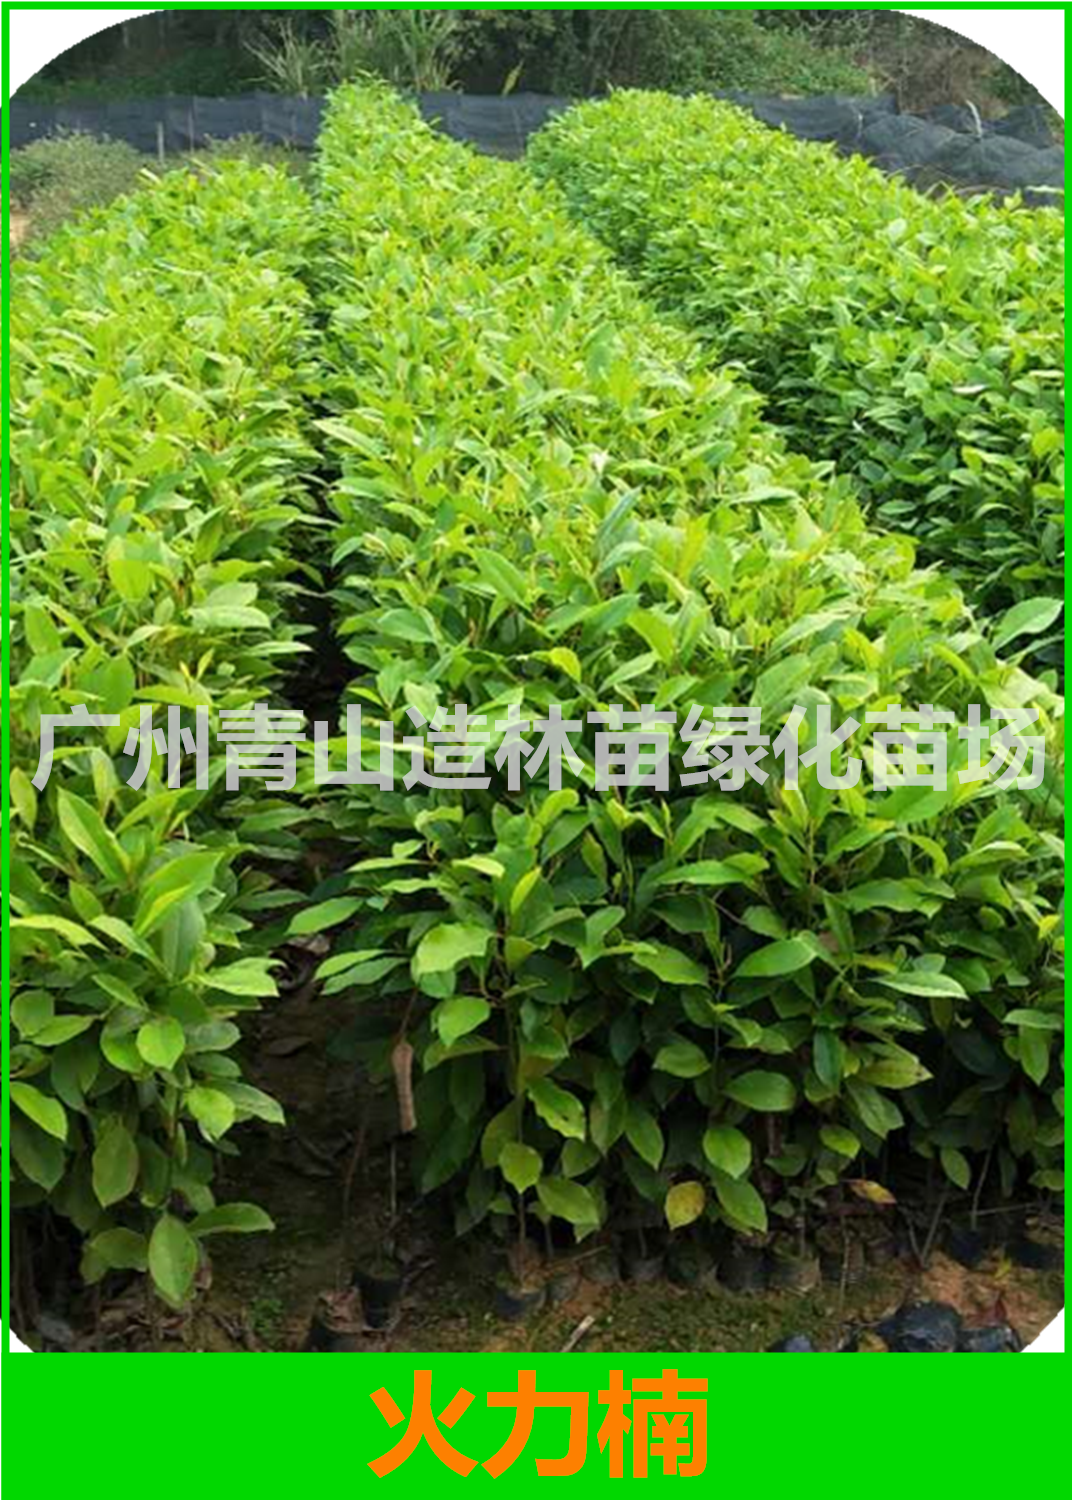 广州火力楠种植基地，广州火力楠种苗批发价，广州火力楠造林苗供应商